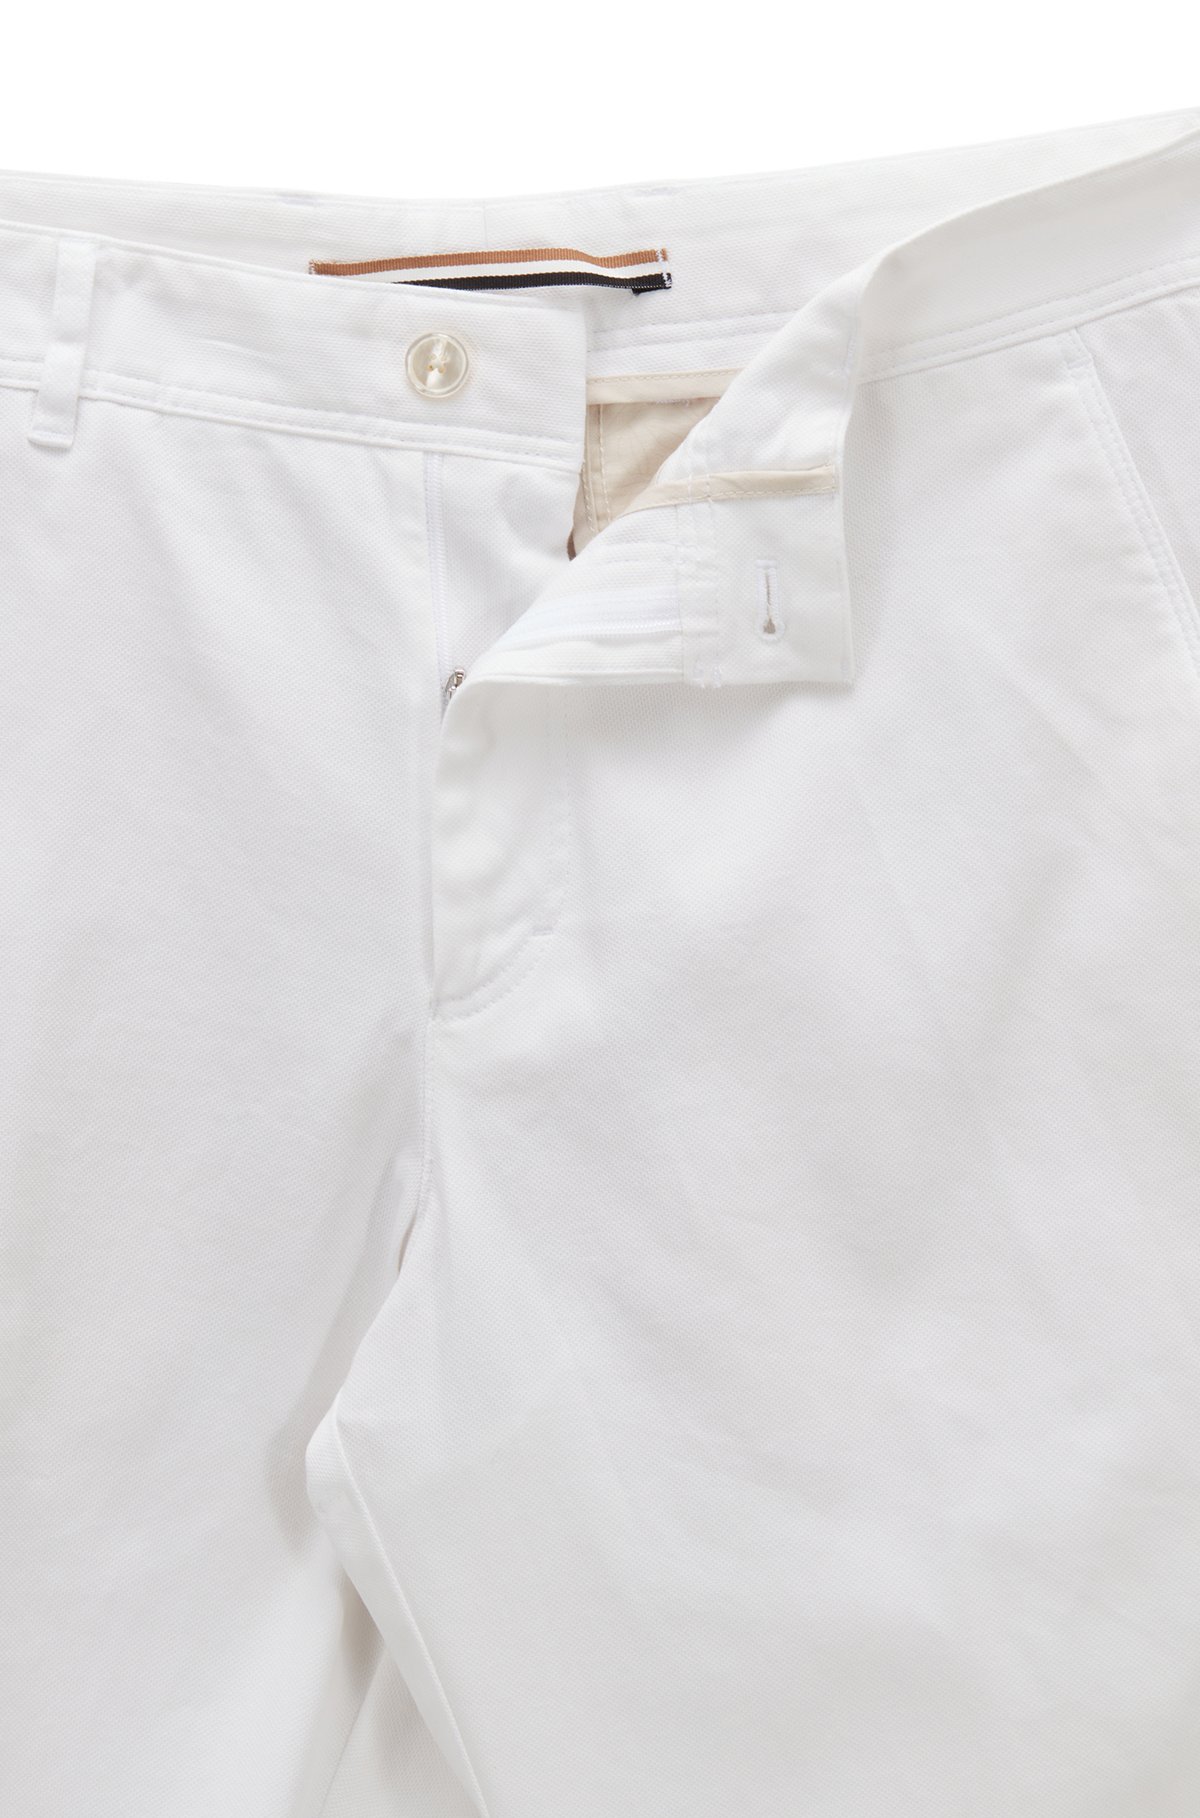 Pantaloni con fit affusolato in cotone elasticizzato a micromotivi, Bianco